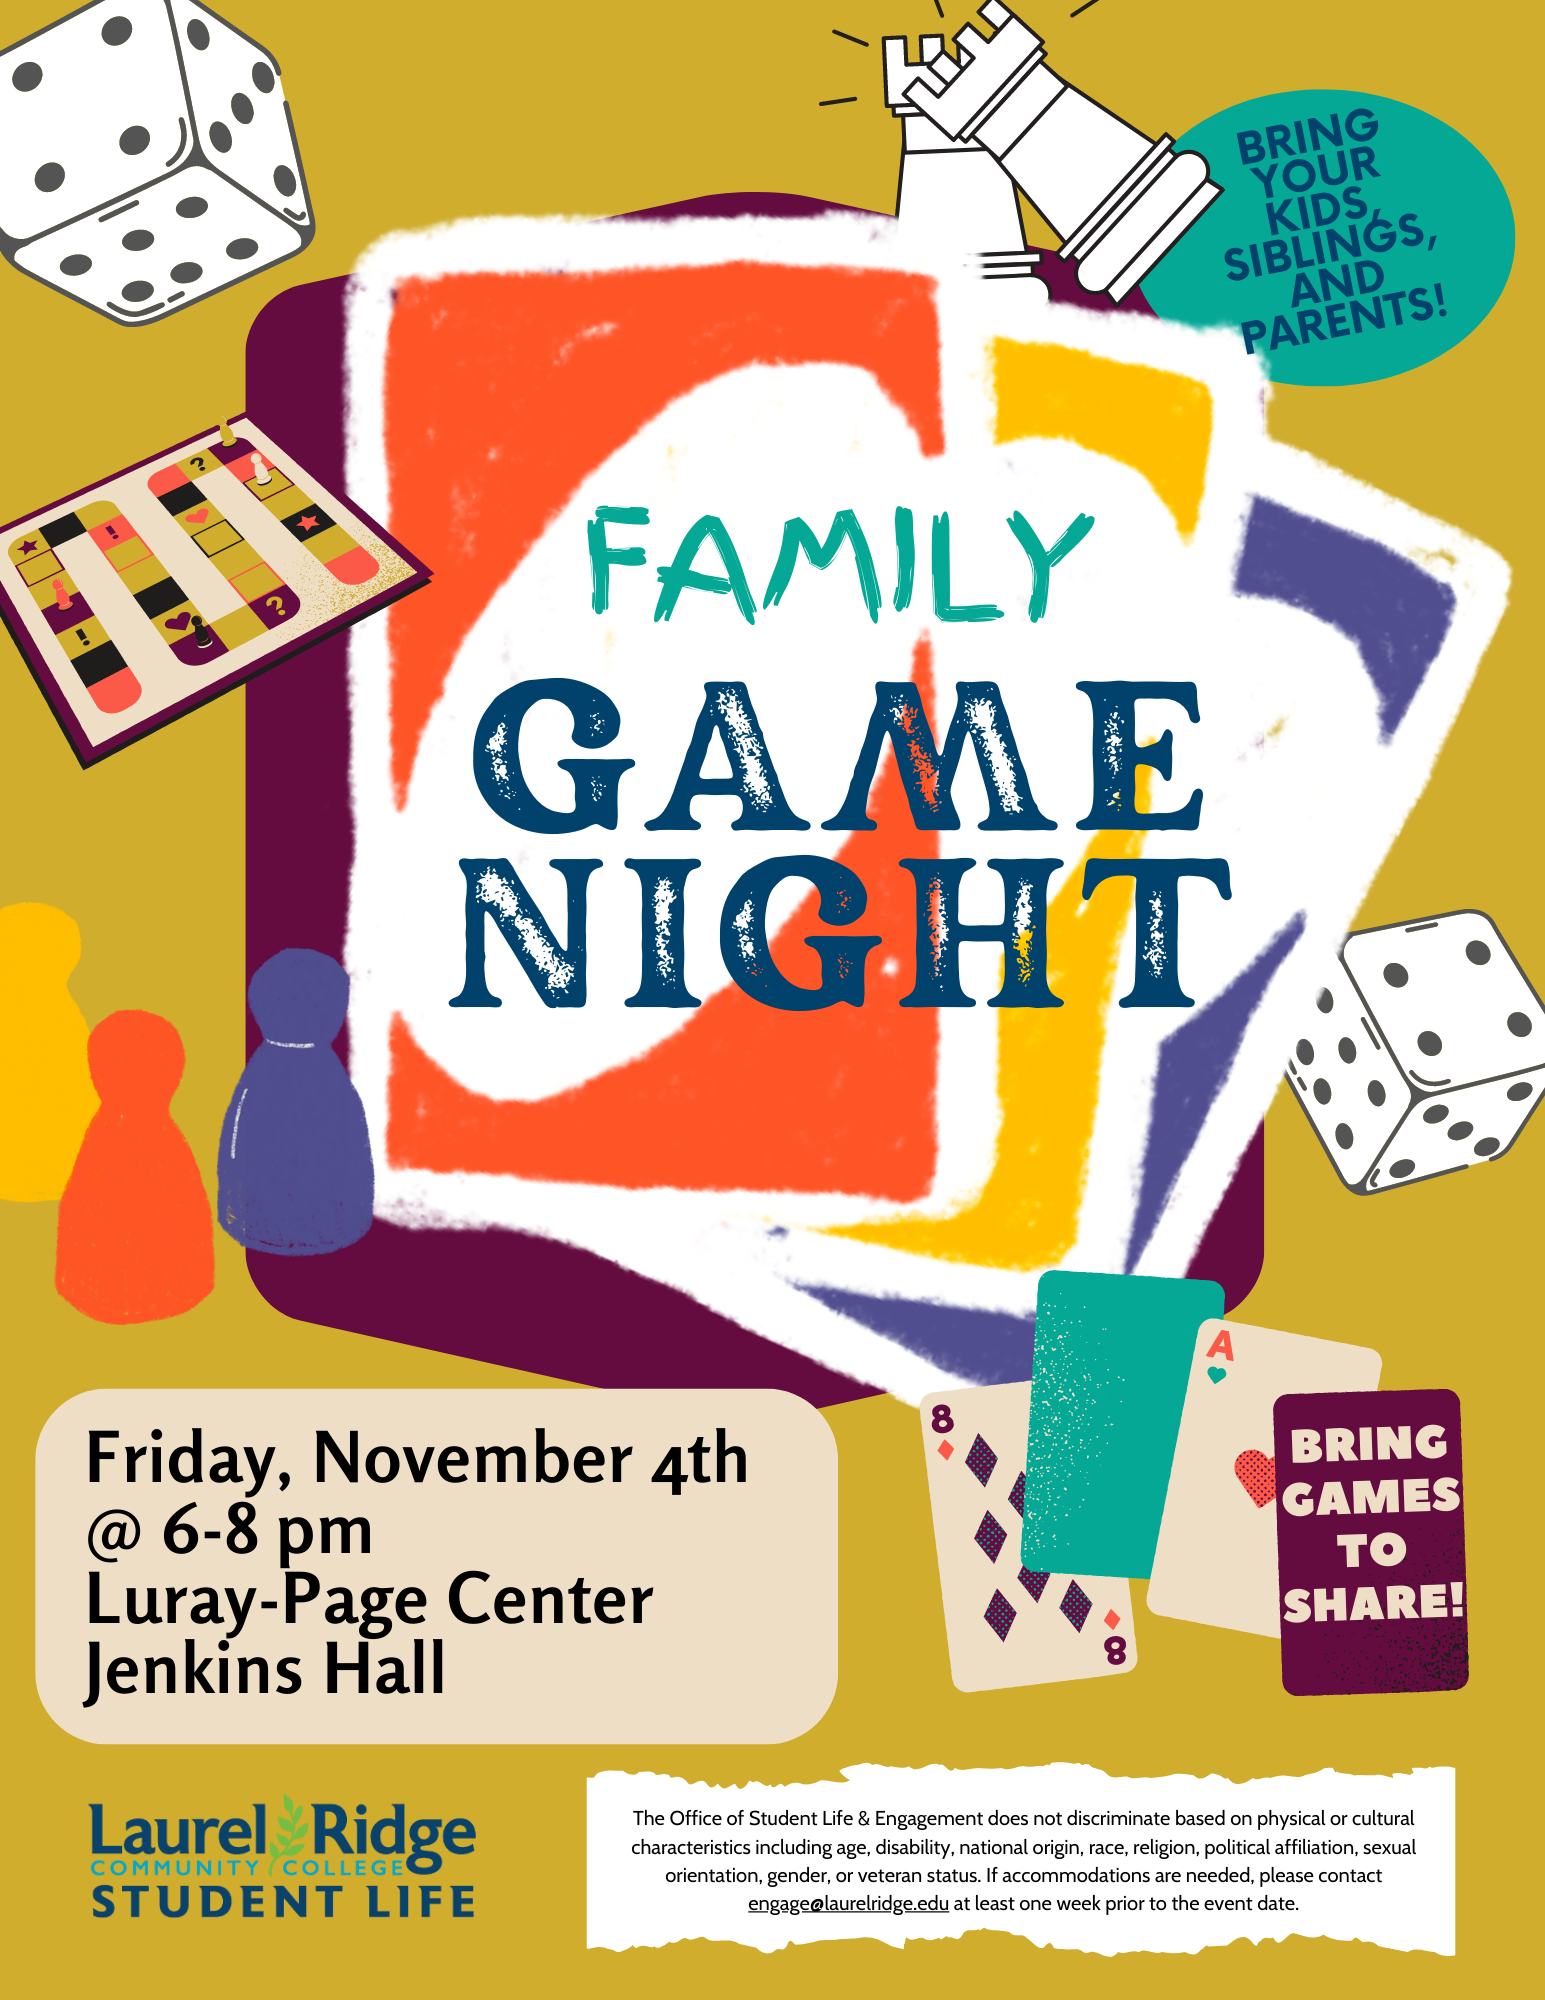 Family Game Night: Ngày cuối tuần là thời gian tuyệt vời để cả gia đình cùng hòa mình vào một buổi tối chơi game thú vị. Tham gia vào Family Game Night để tạo ra những kỷ niệm và thông điệp yêu thương với những người thân trong cuộc sống của bạn.